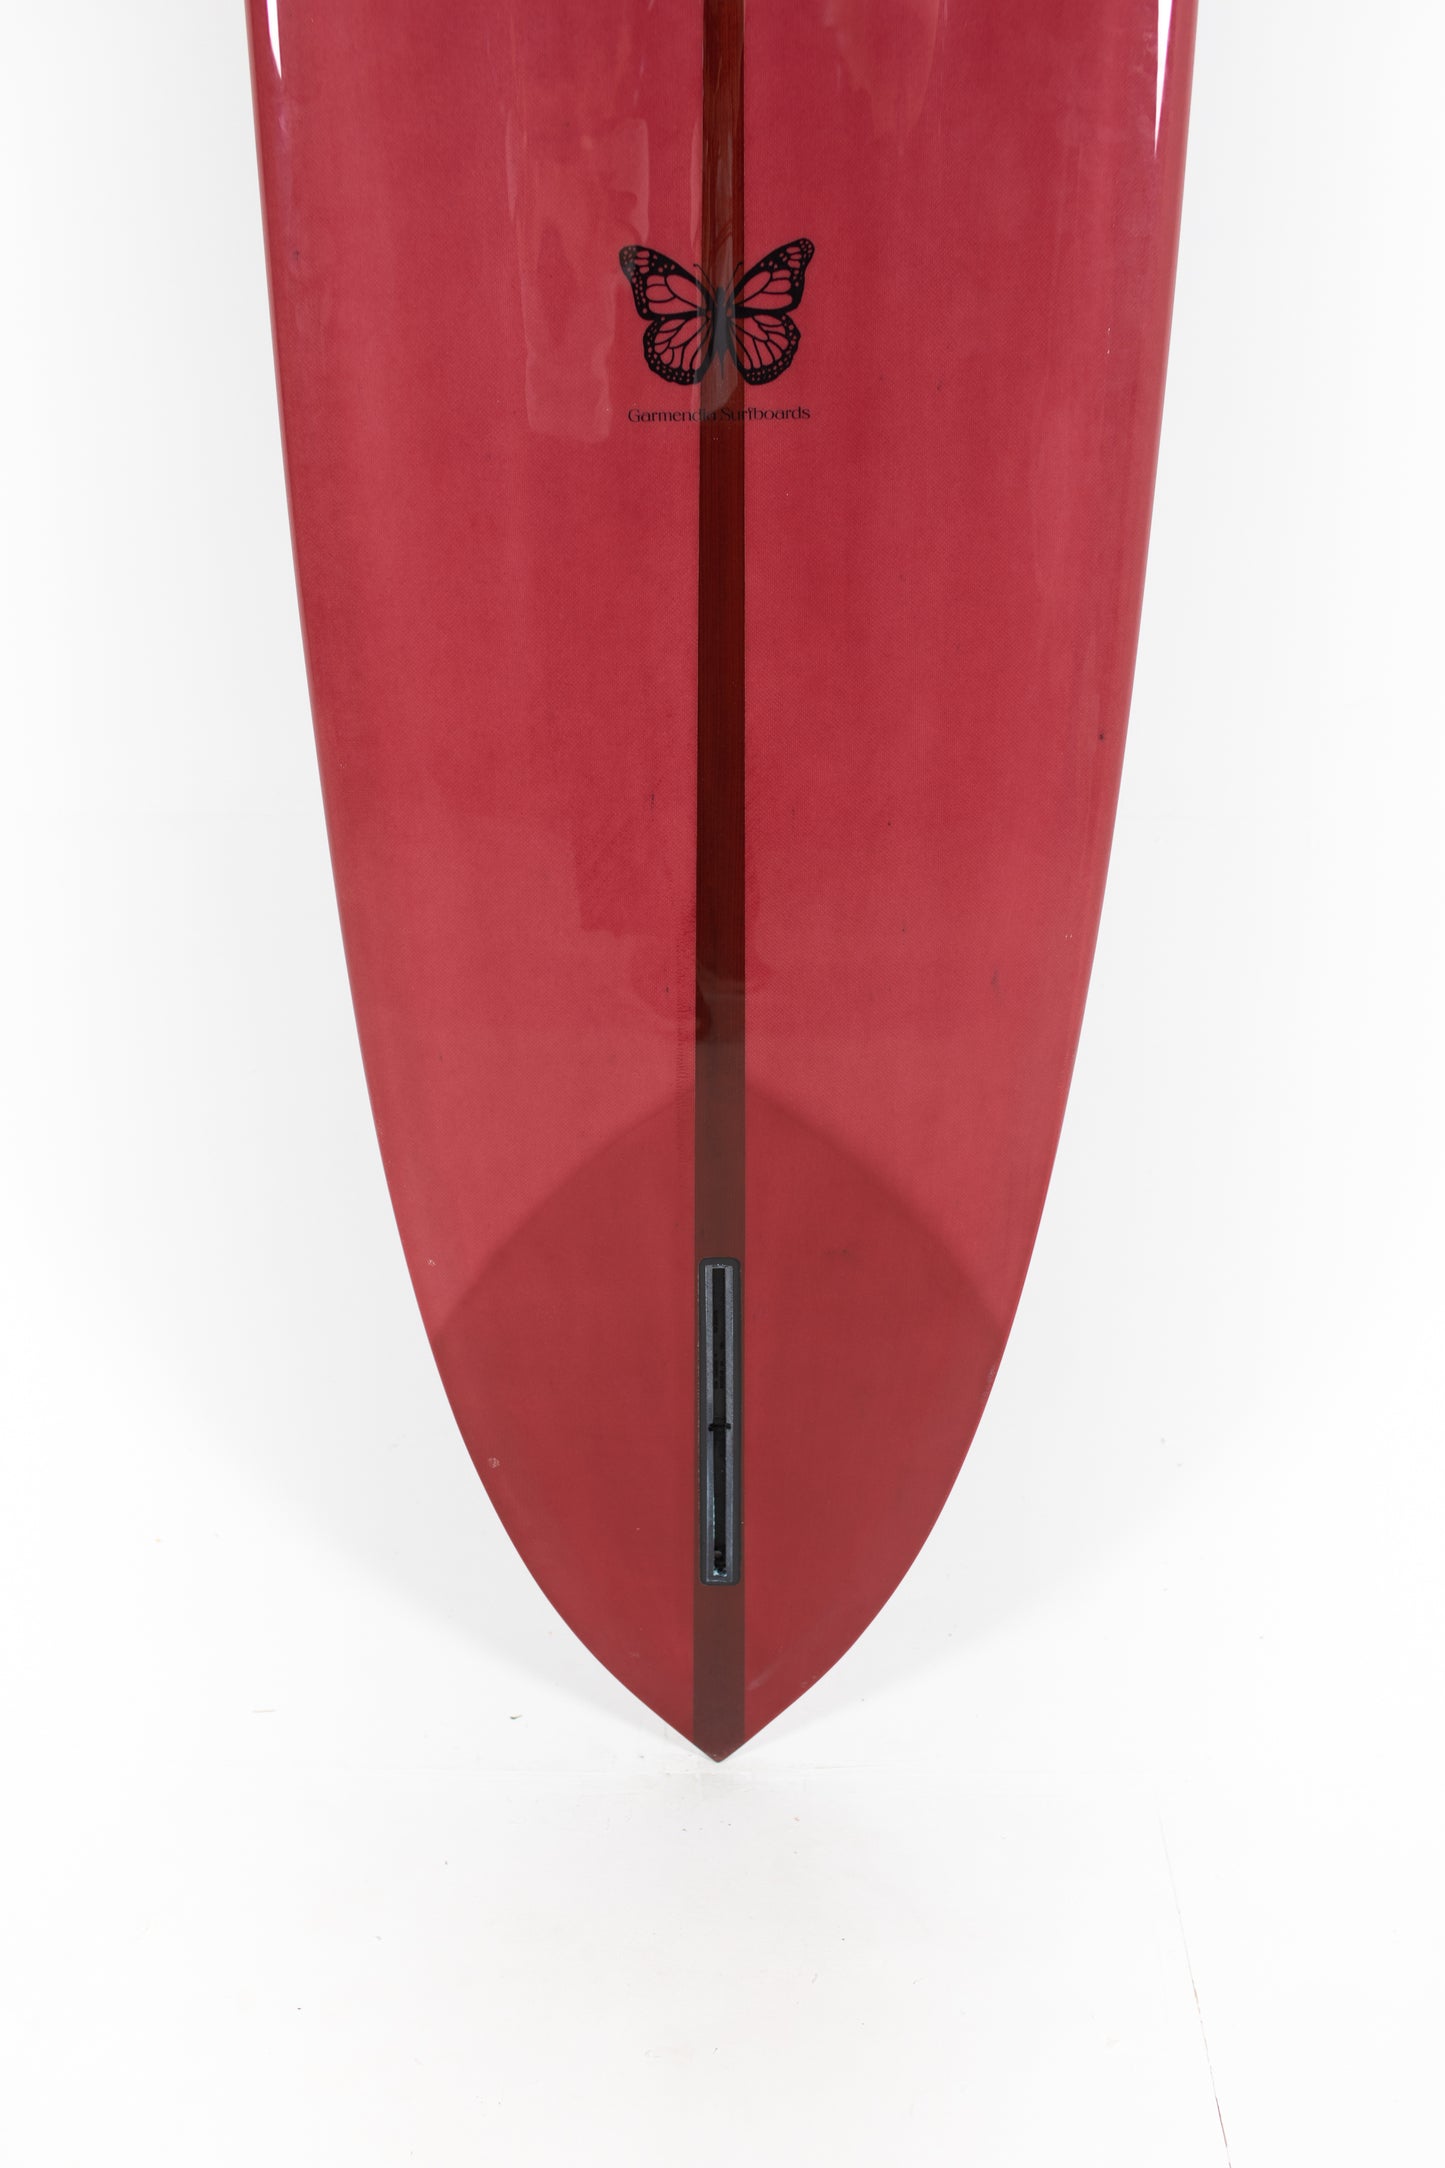 
                  
                    Pukas Surf Shop - Garmendia Surfboards - MINI GLIDER DREAMER - 9’7 x 23 x 3 1/8 - Ref.MINIGLIDER97
                  
                